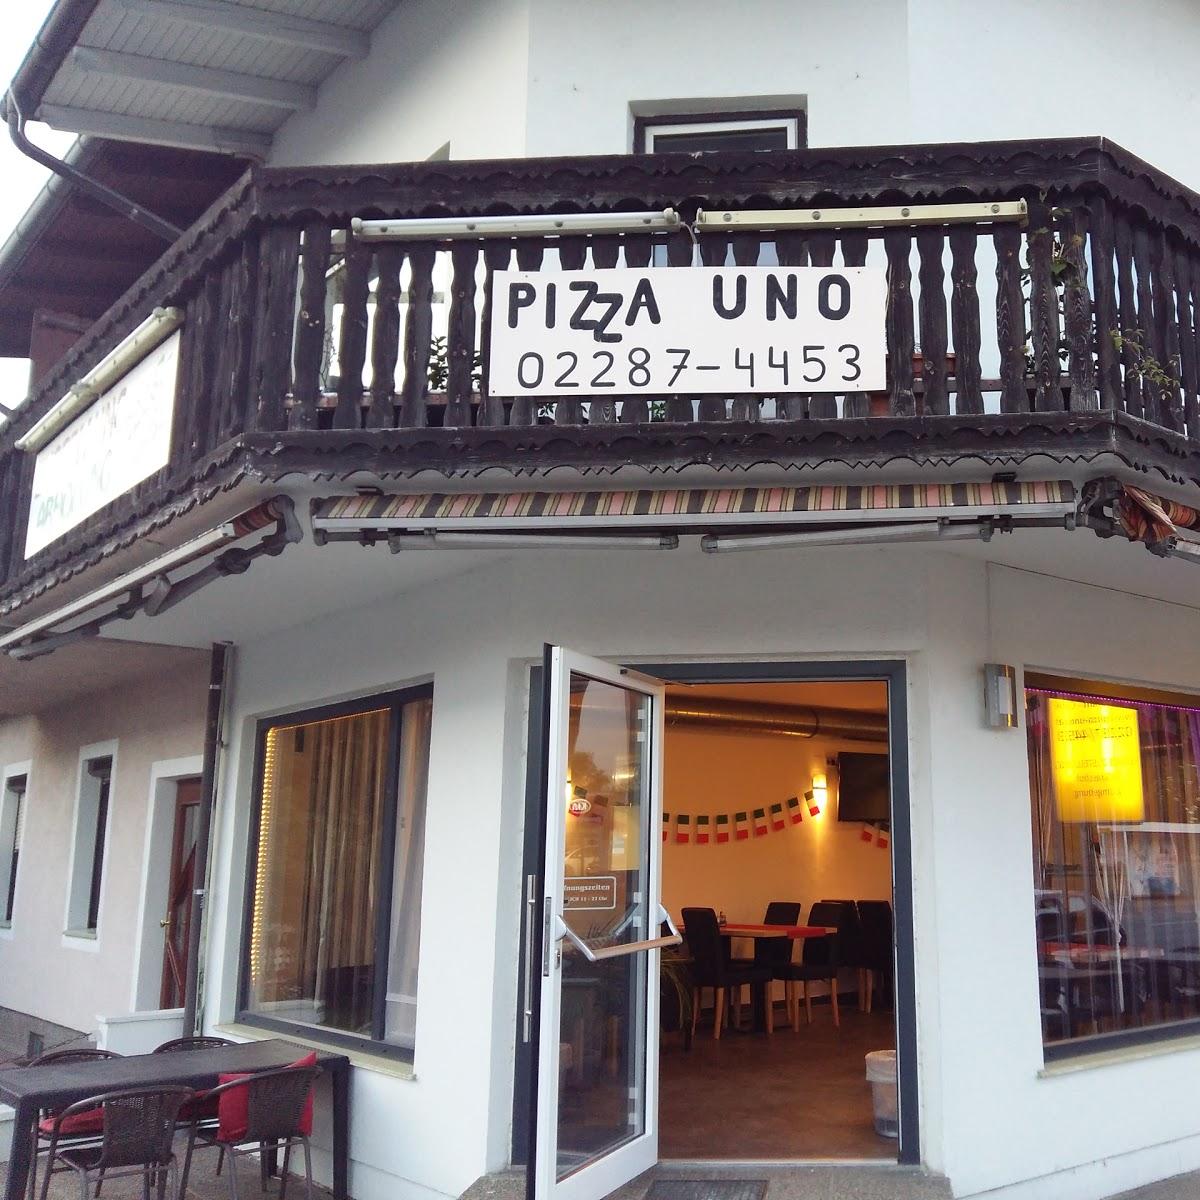 Restaurant "Pizza Uno" in Strasshof an der Nordbahn